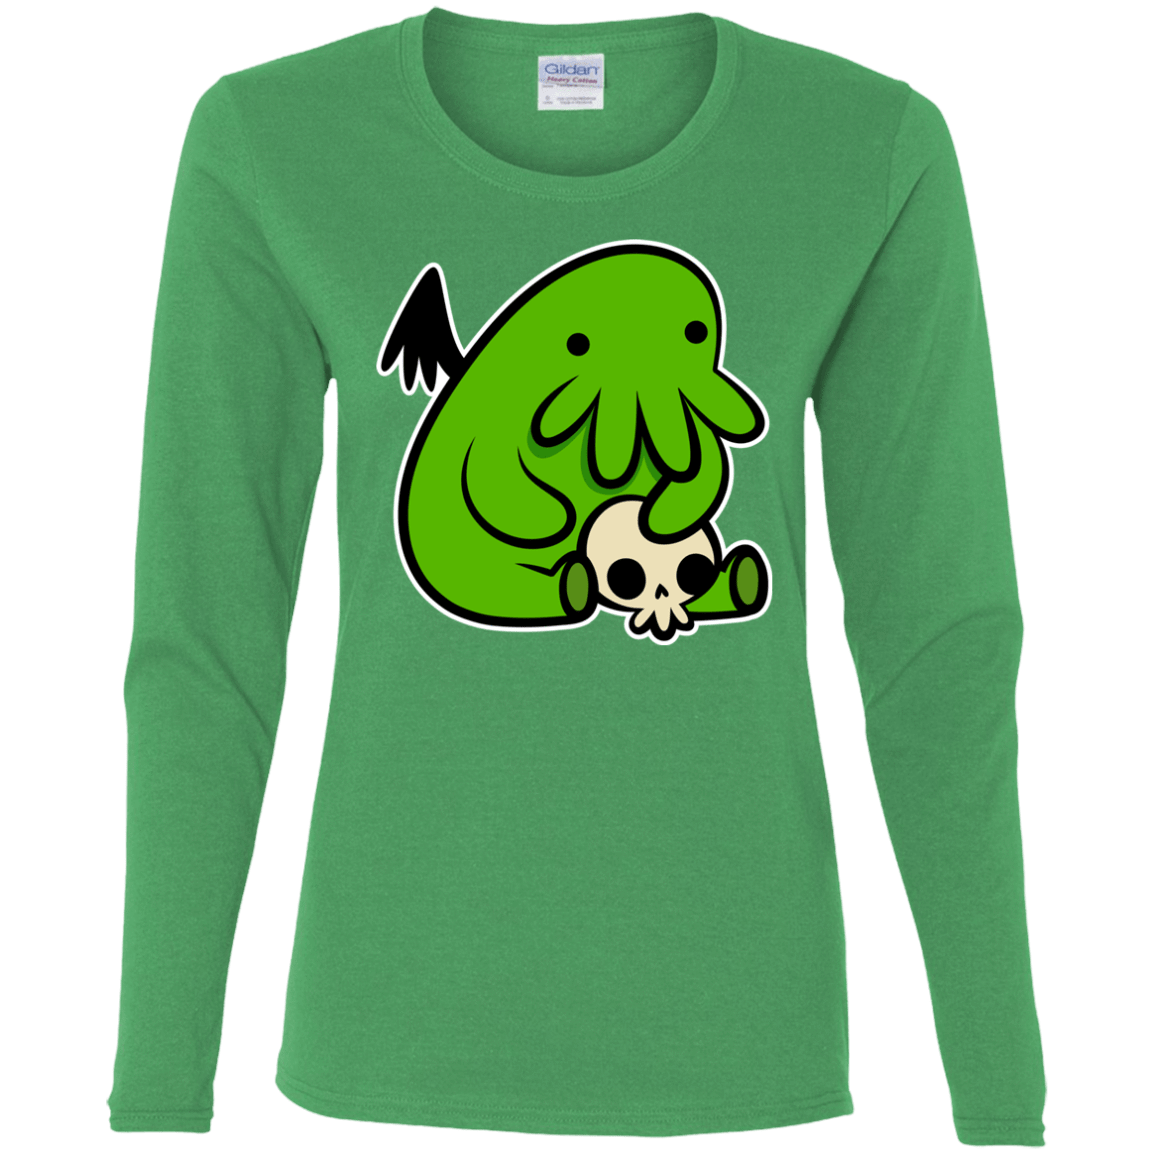 T-Shirts Irish Green / S Baby Cthulhu Women's Long Sleeve T-Shirt